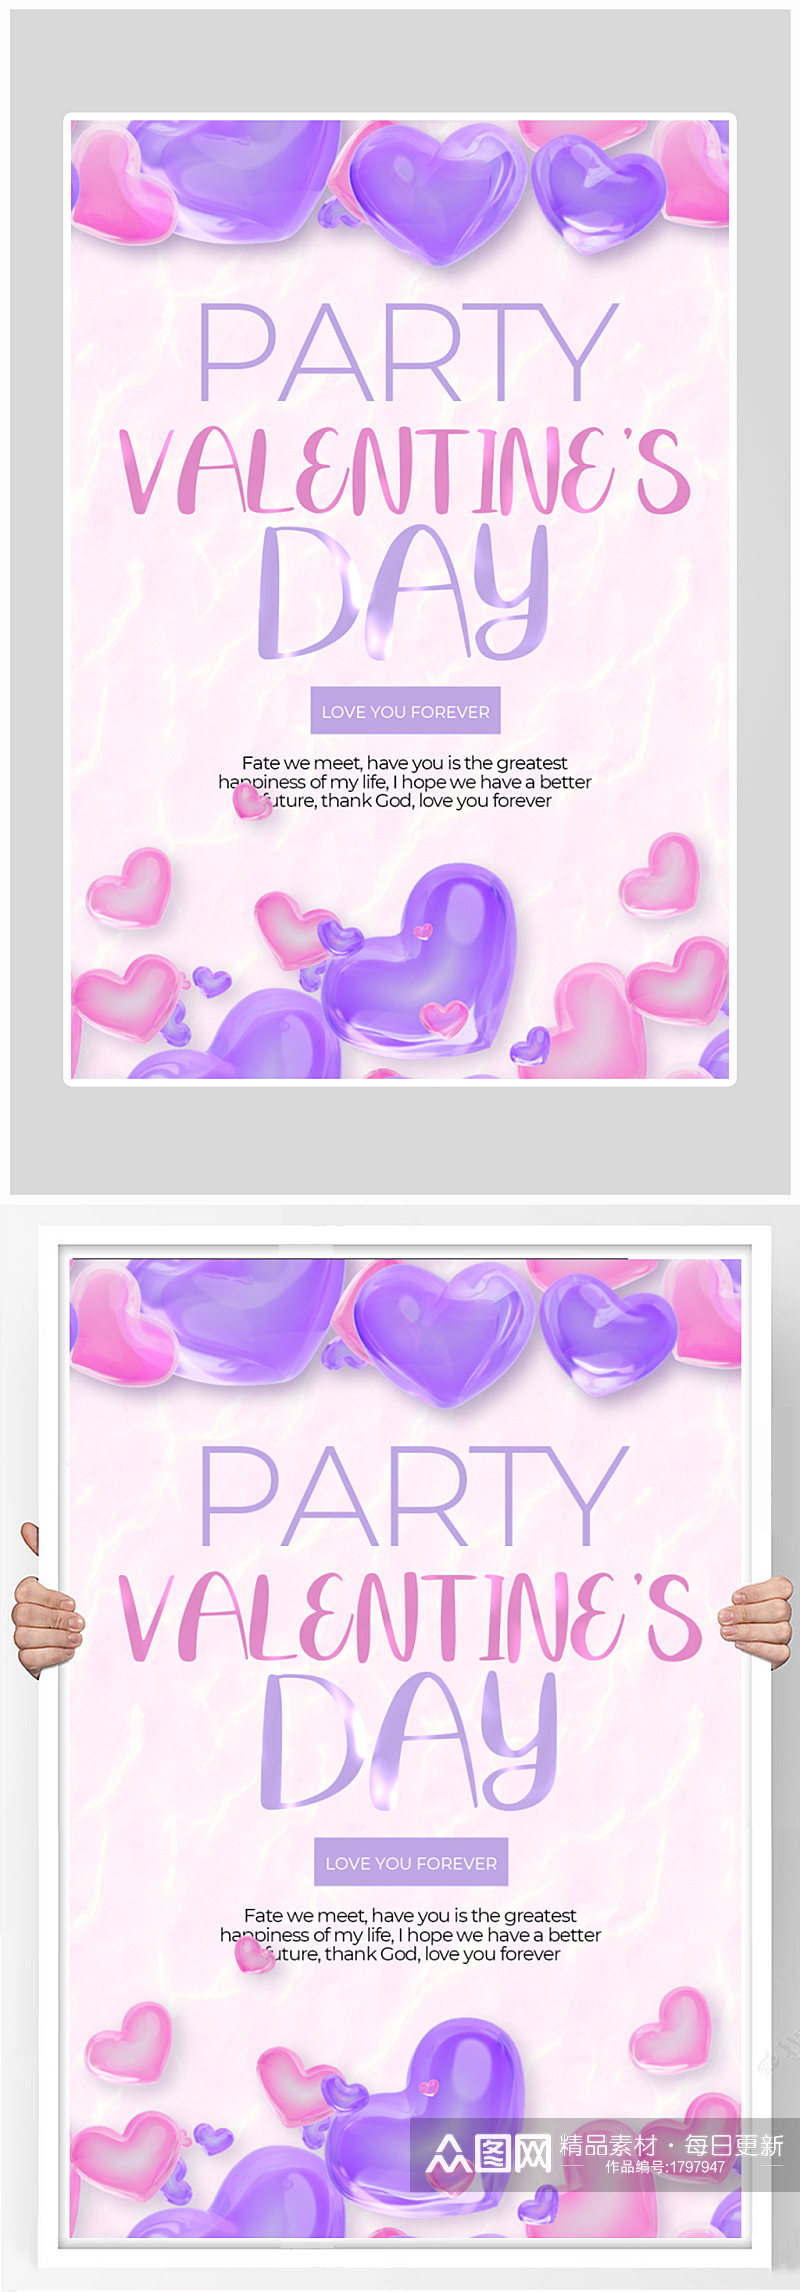 紫色大气质感情人节海报素材